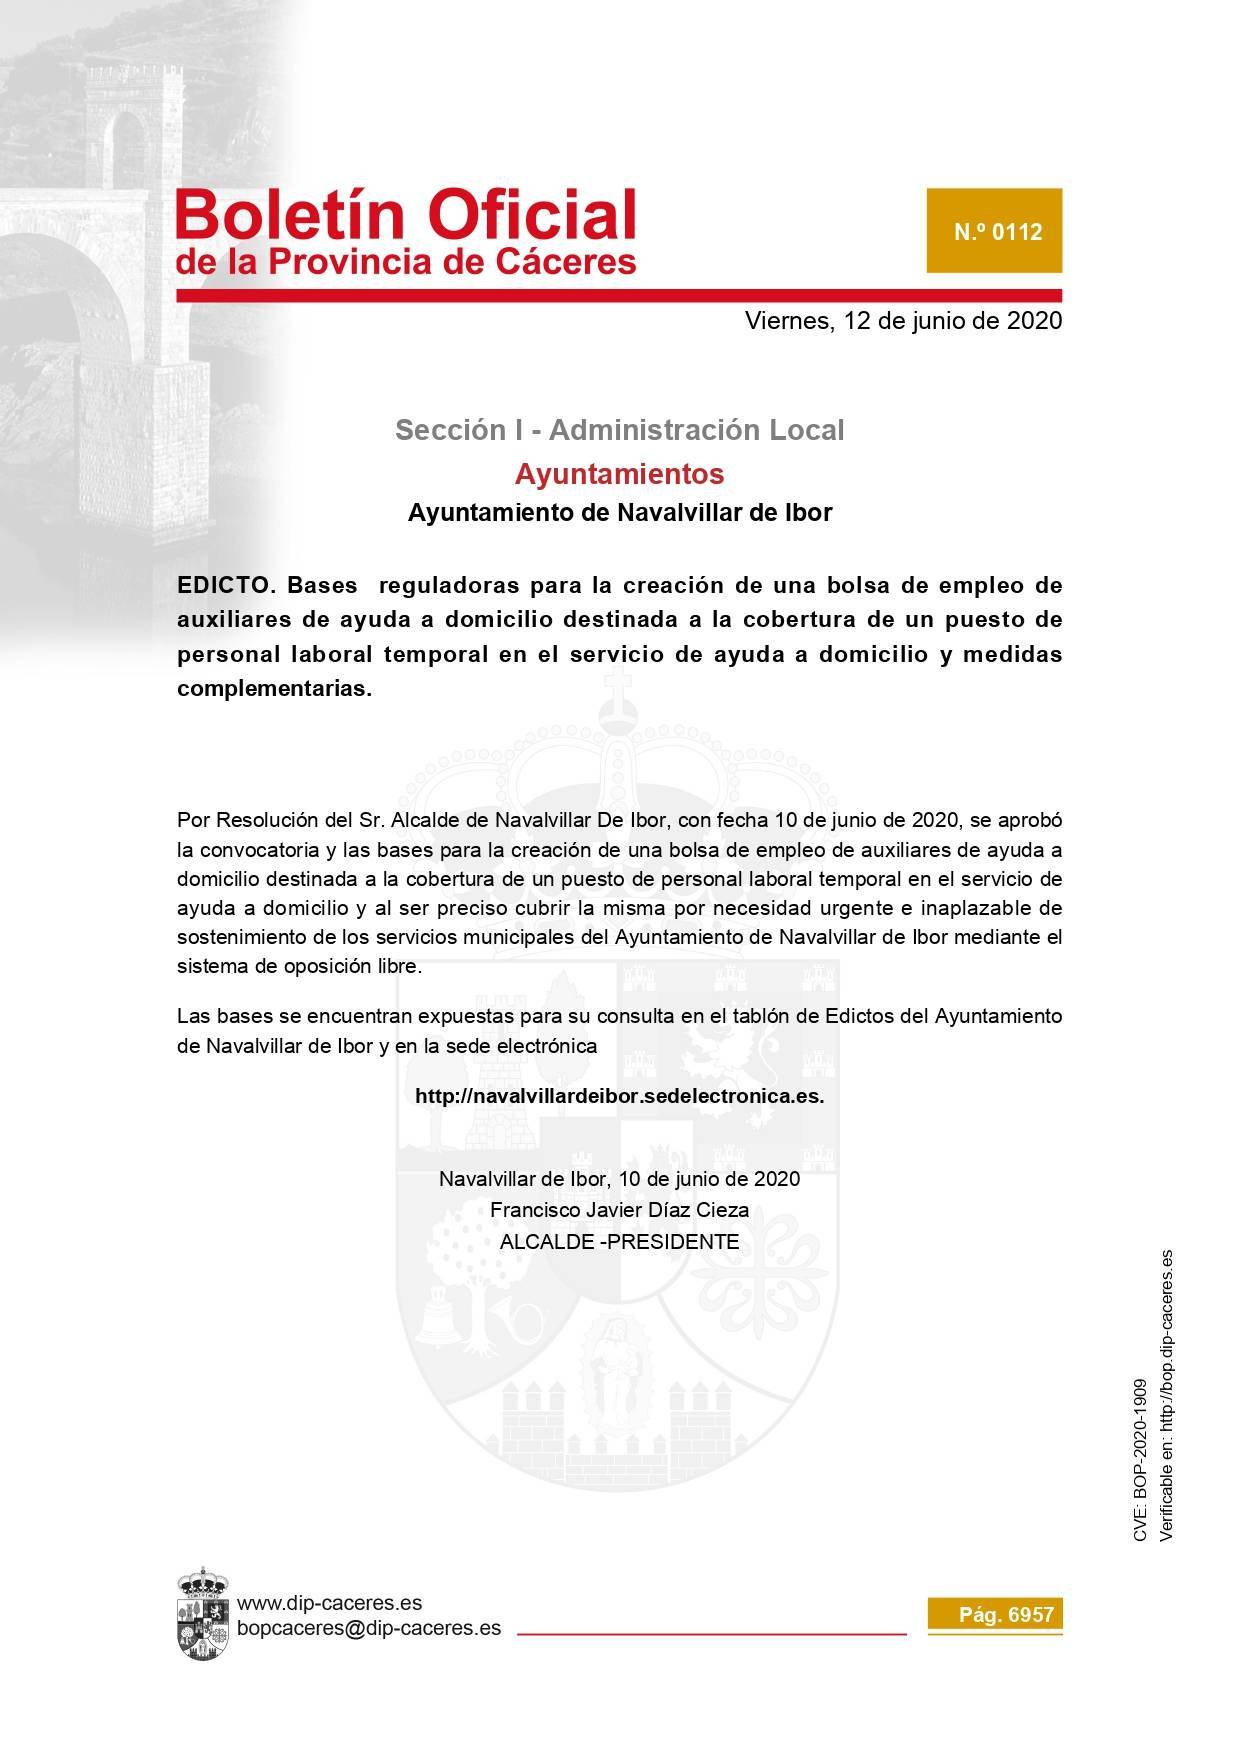 Bolsa de auxiliares de ayuda a domicilio temporal 2020 - Navalvillar de Ibor (Cáceres)